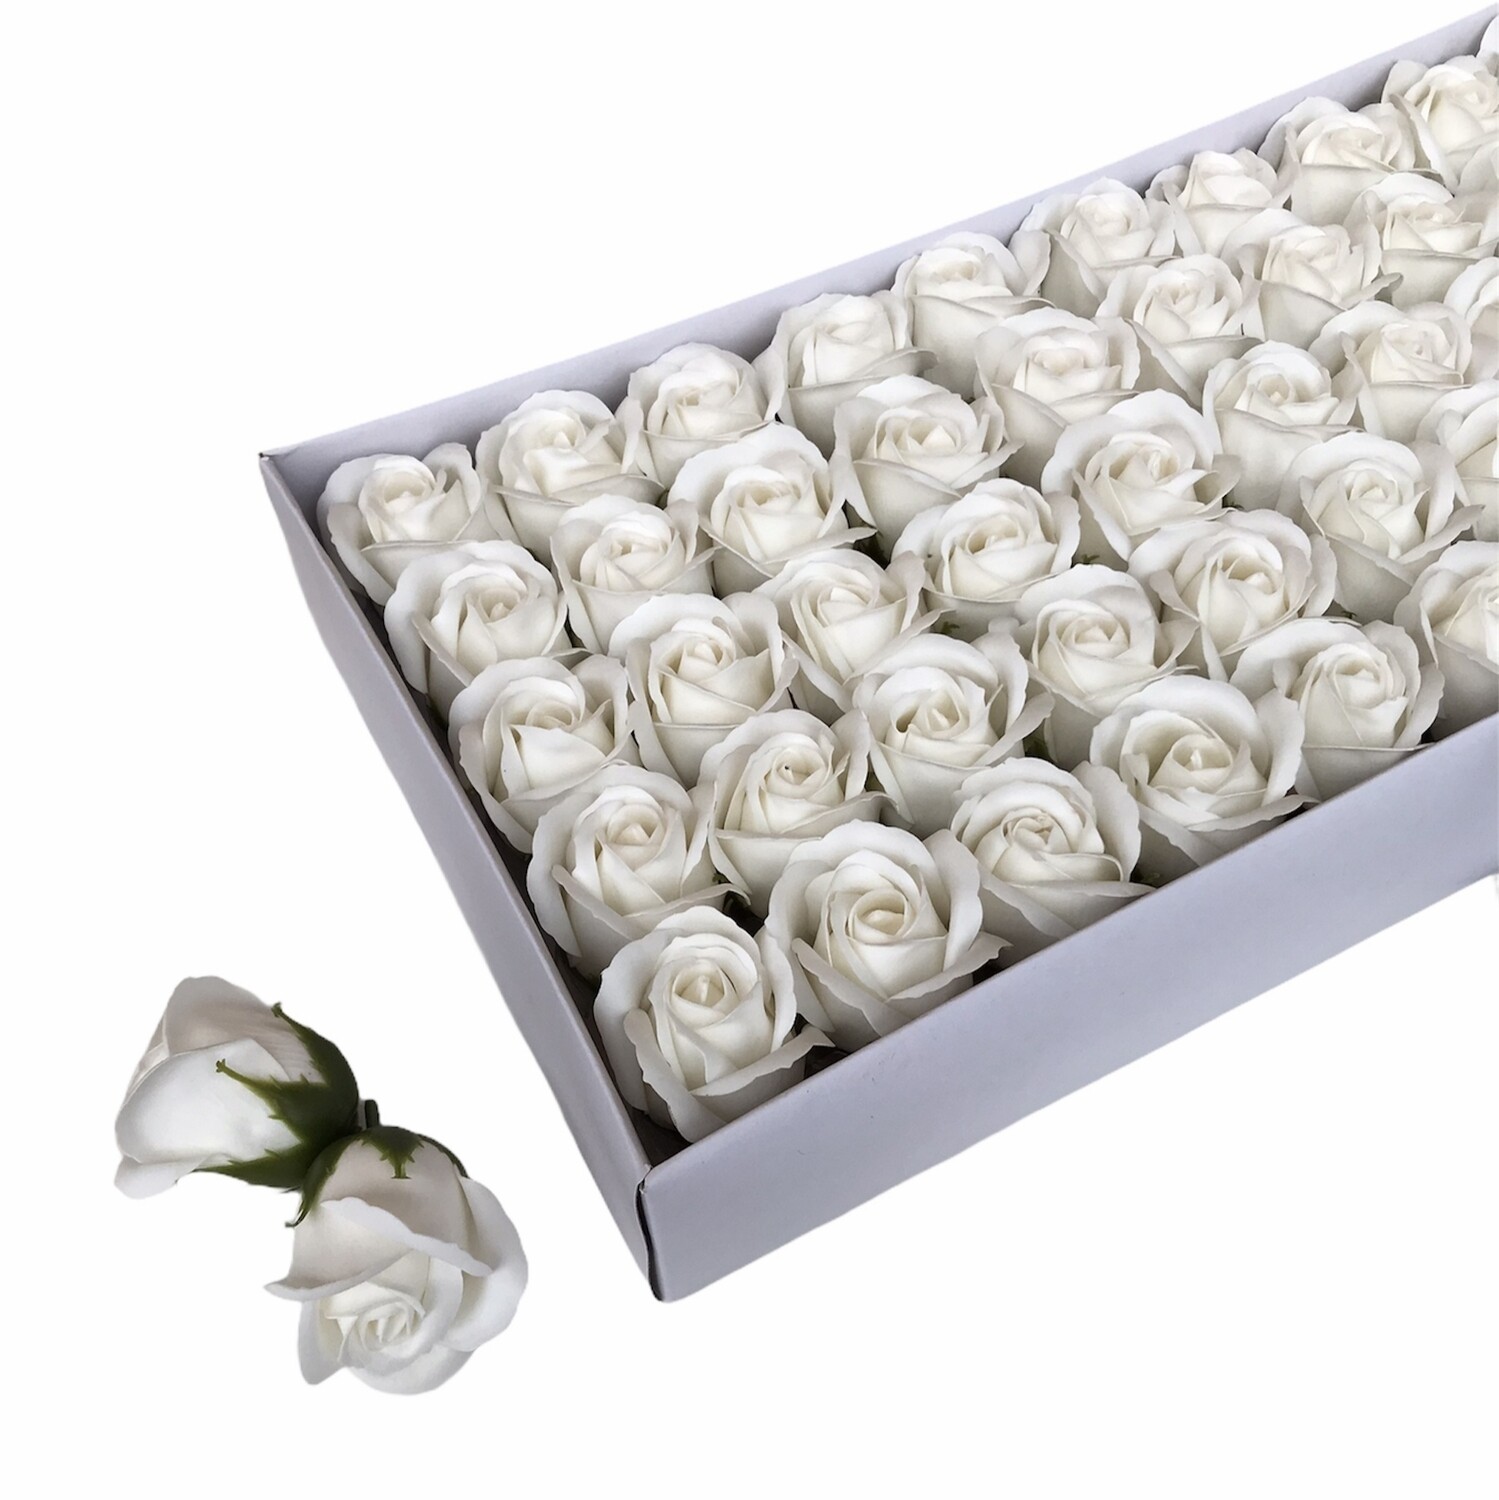 Мыльные розы, цвет - БЕЛЫЙ, размер 5х5 см, 50шт.